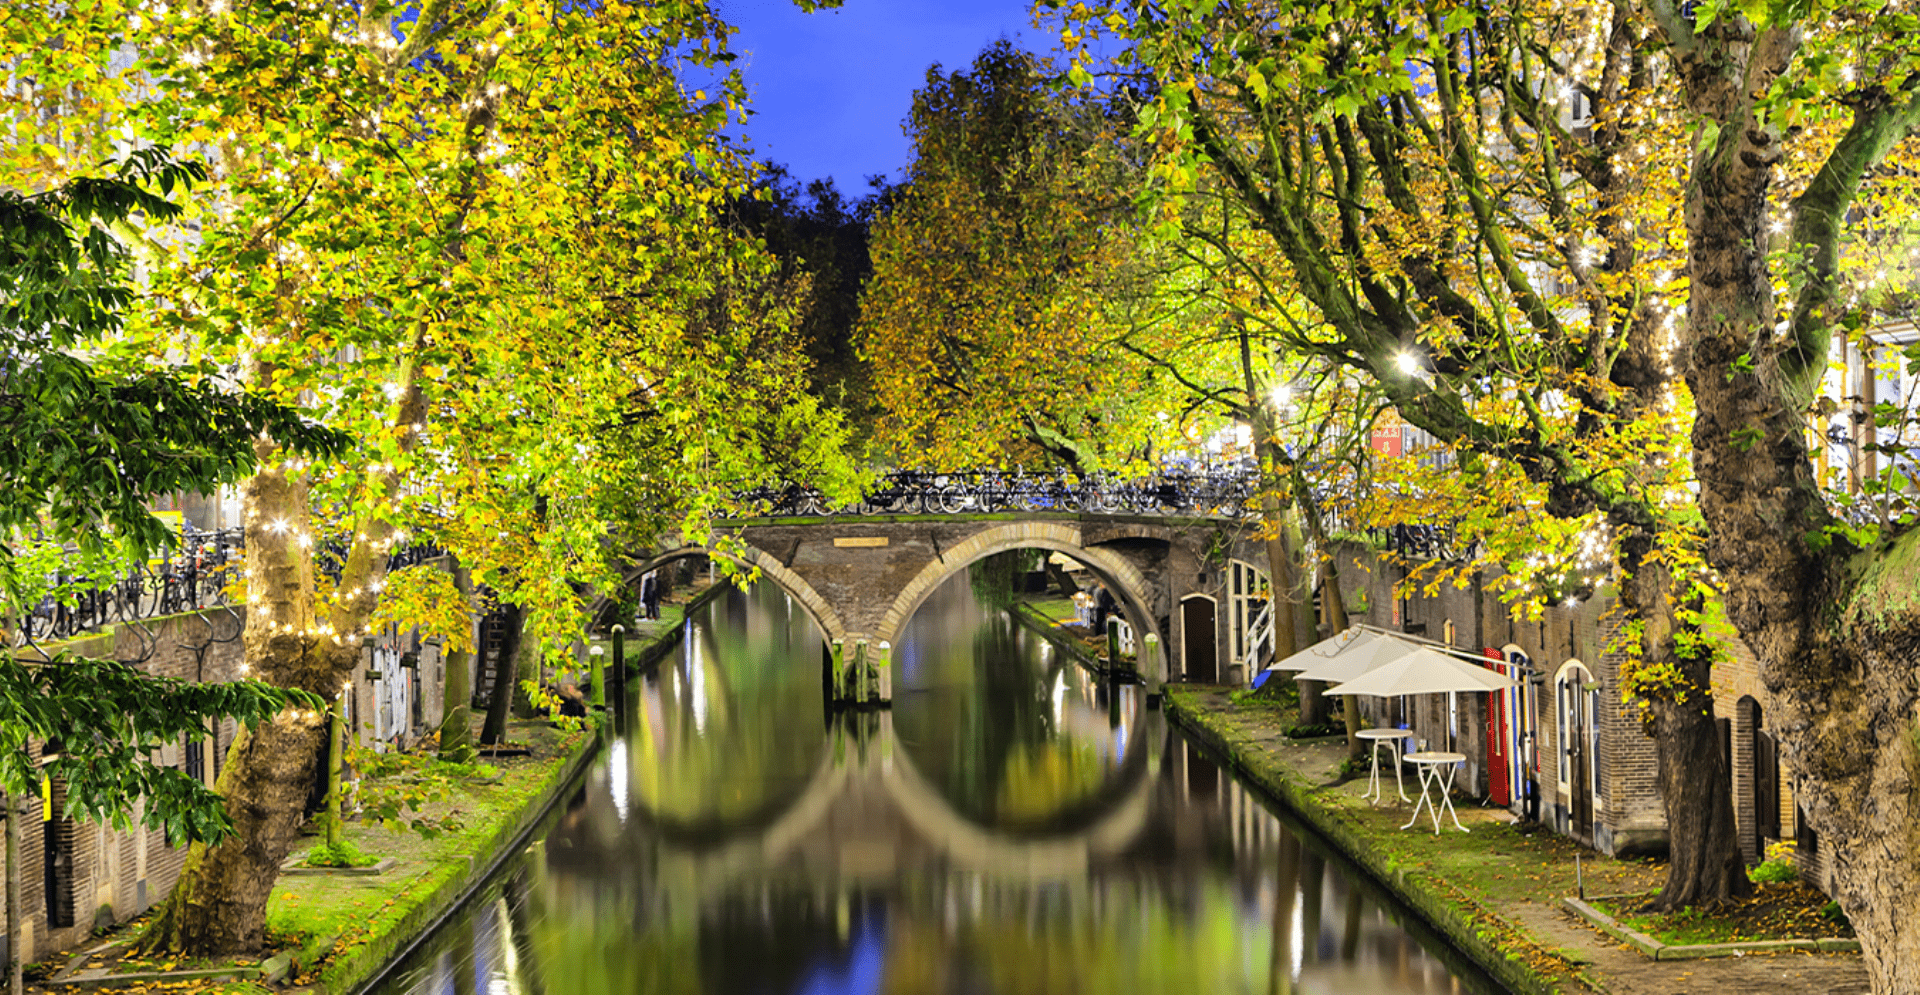 Bomenrij langs kanaal met terrassen en brug met bogen over het kanaal in Utrecht